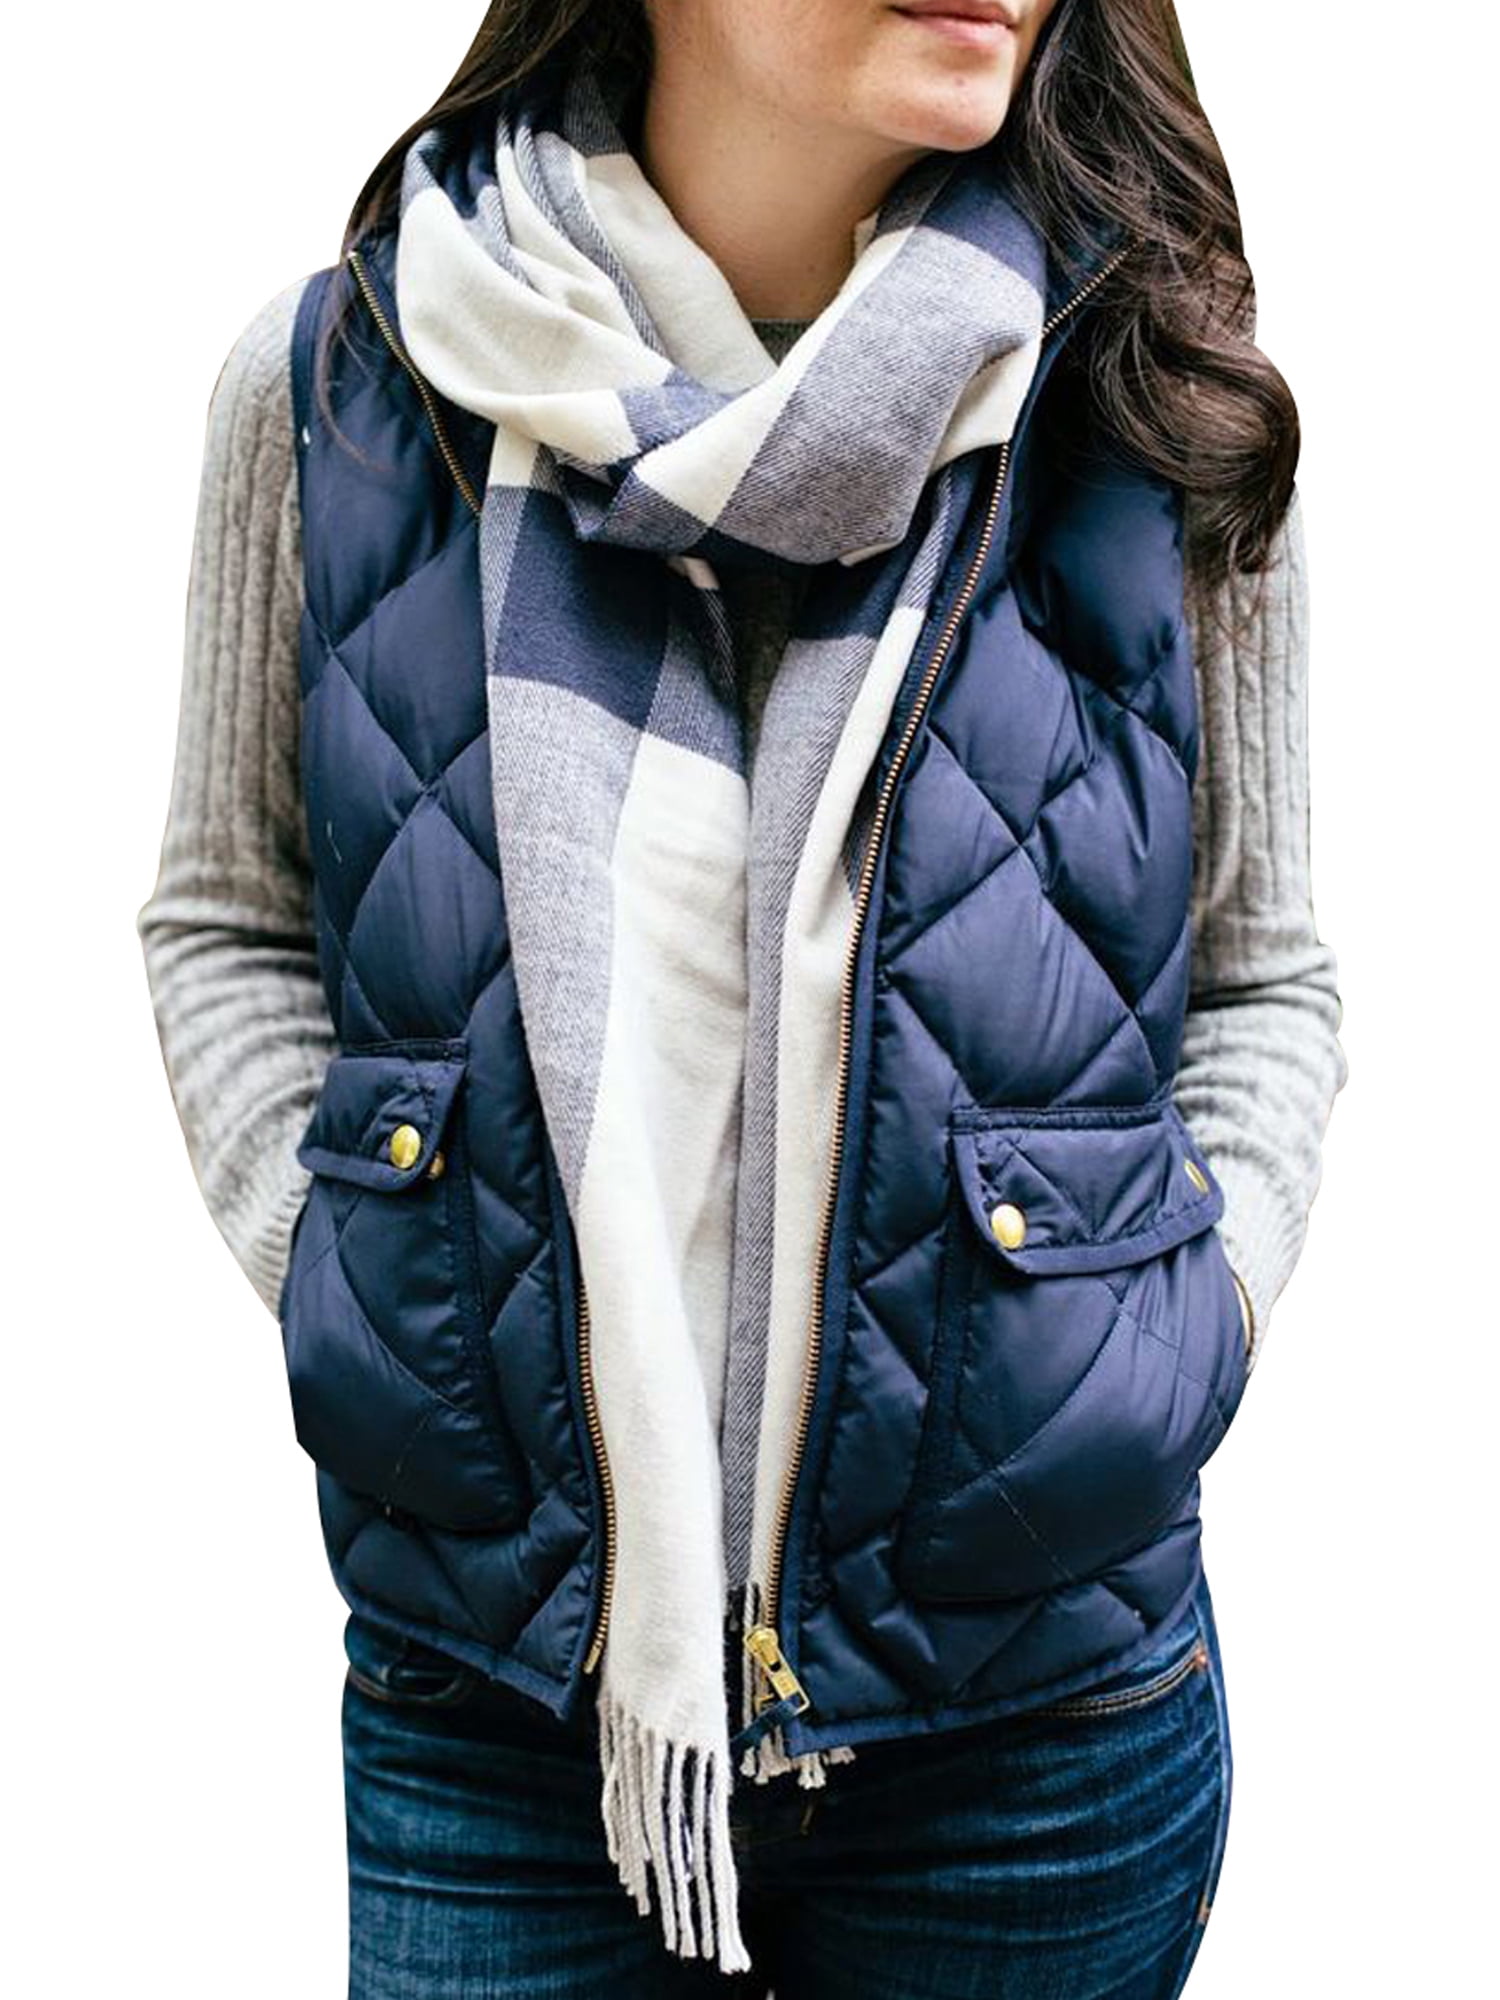 Pivaconis Mens Faux Fur Lined Distressed Winter Fleece Plus Size Lapel Neck Denim Jacket Parka Coat